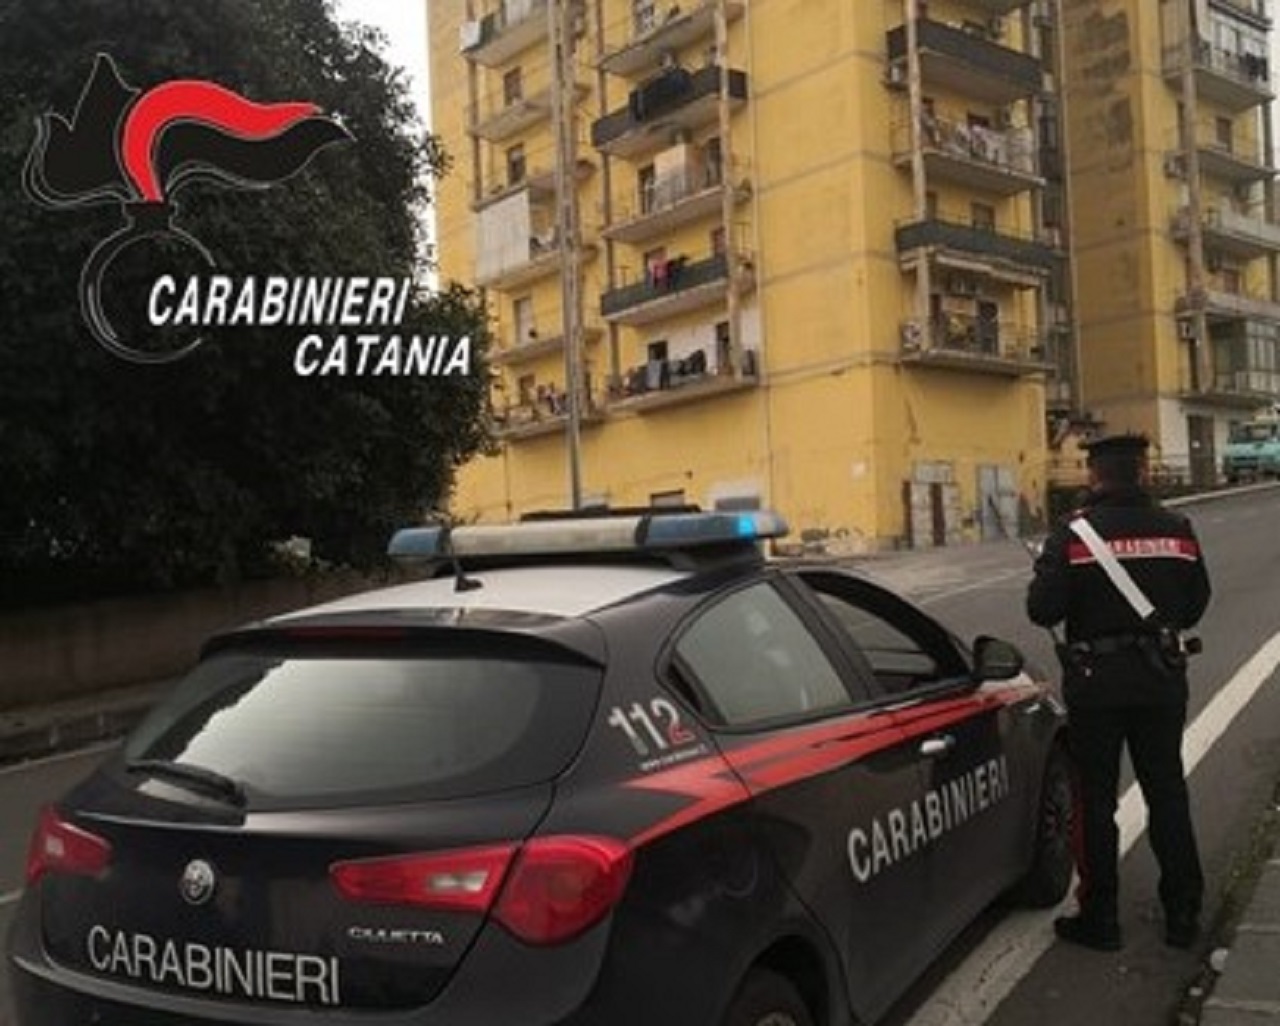 Librino a setaccio, carabinieri contrastano illegalità diffusa e condotte di guida pericolose